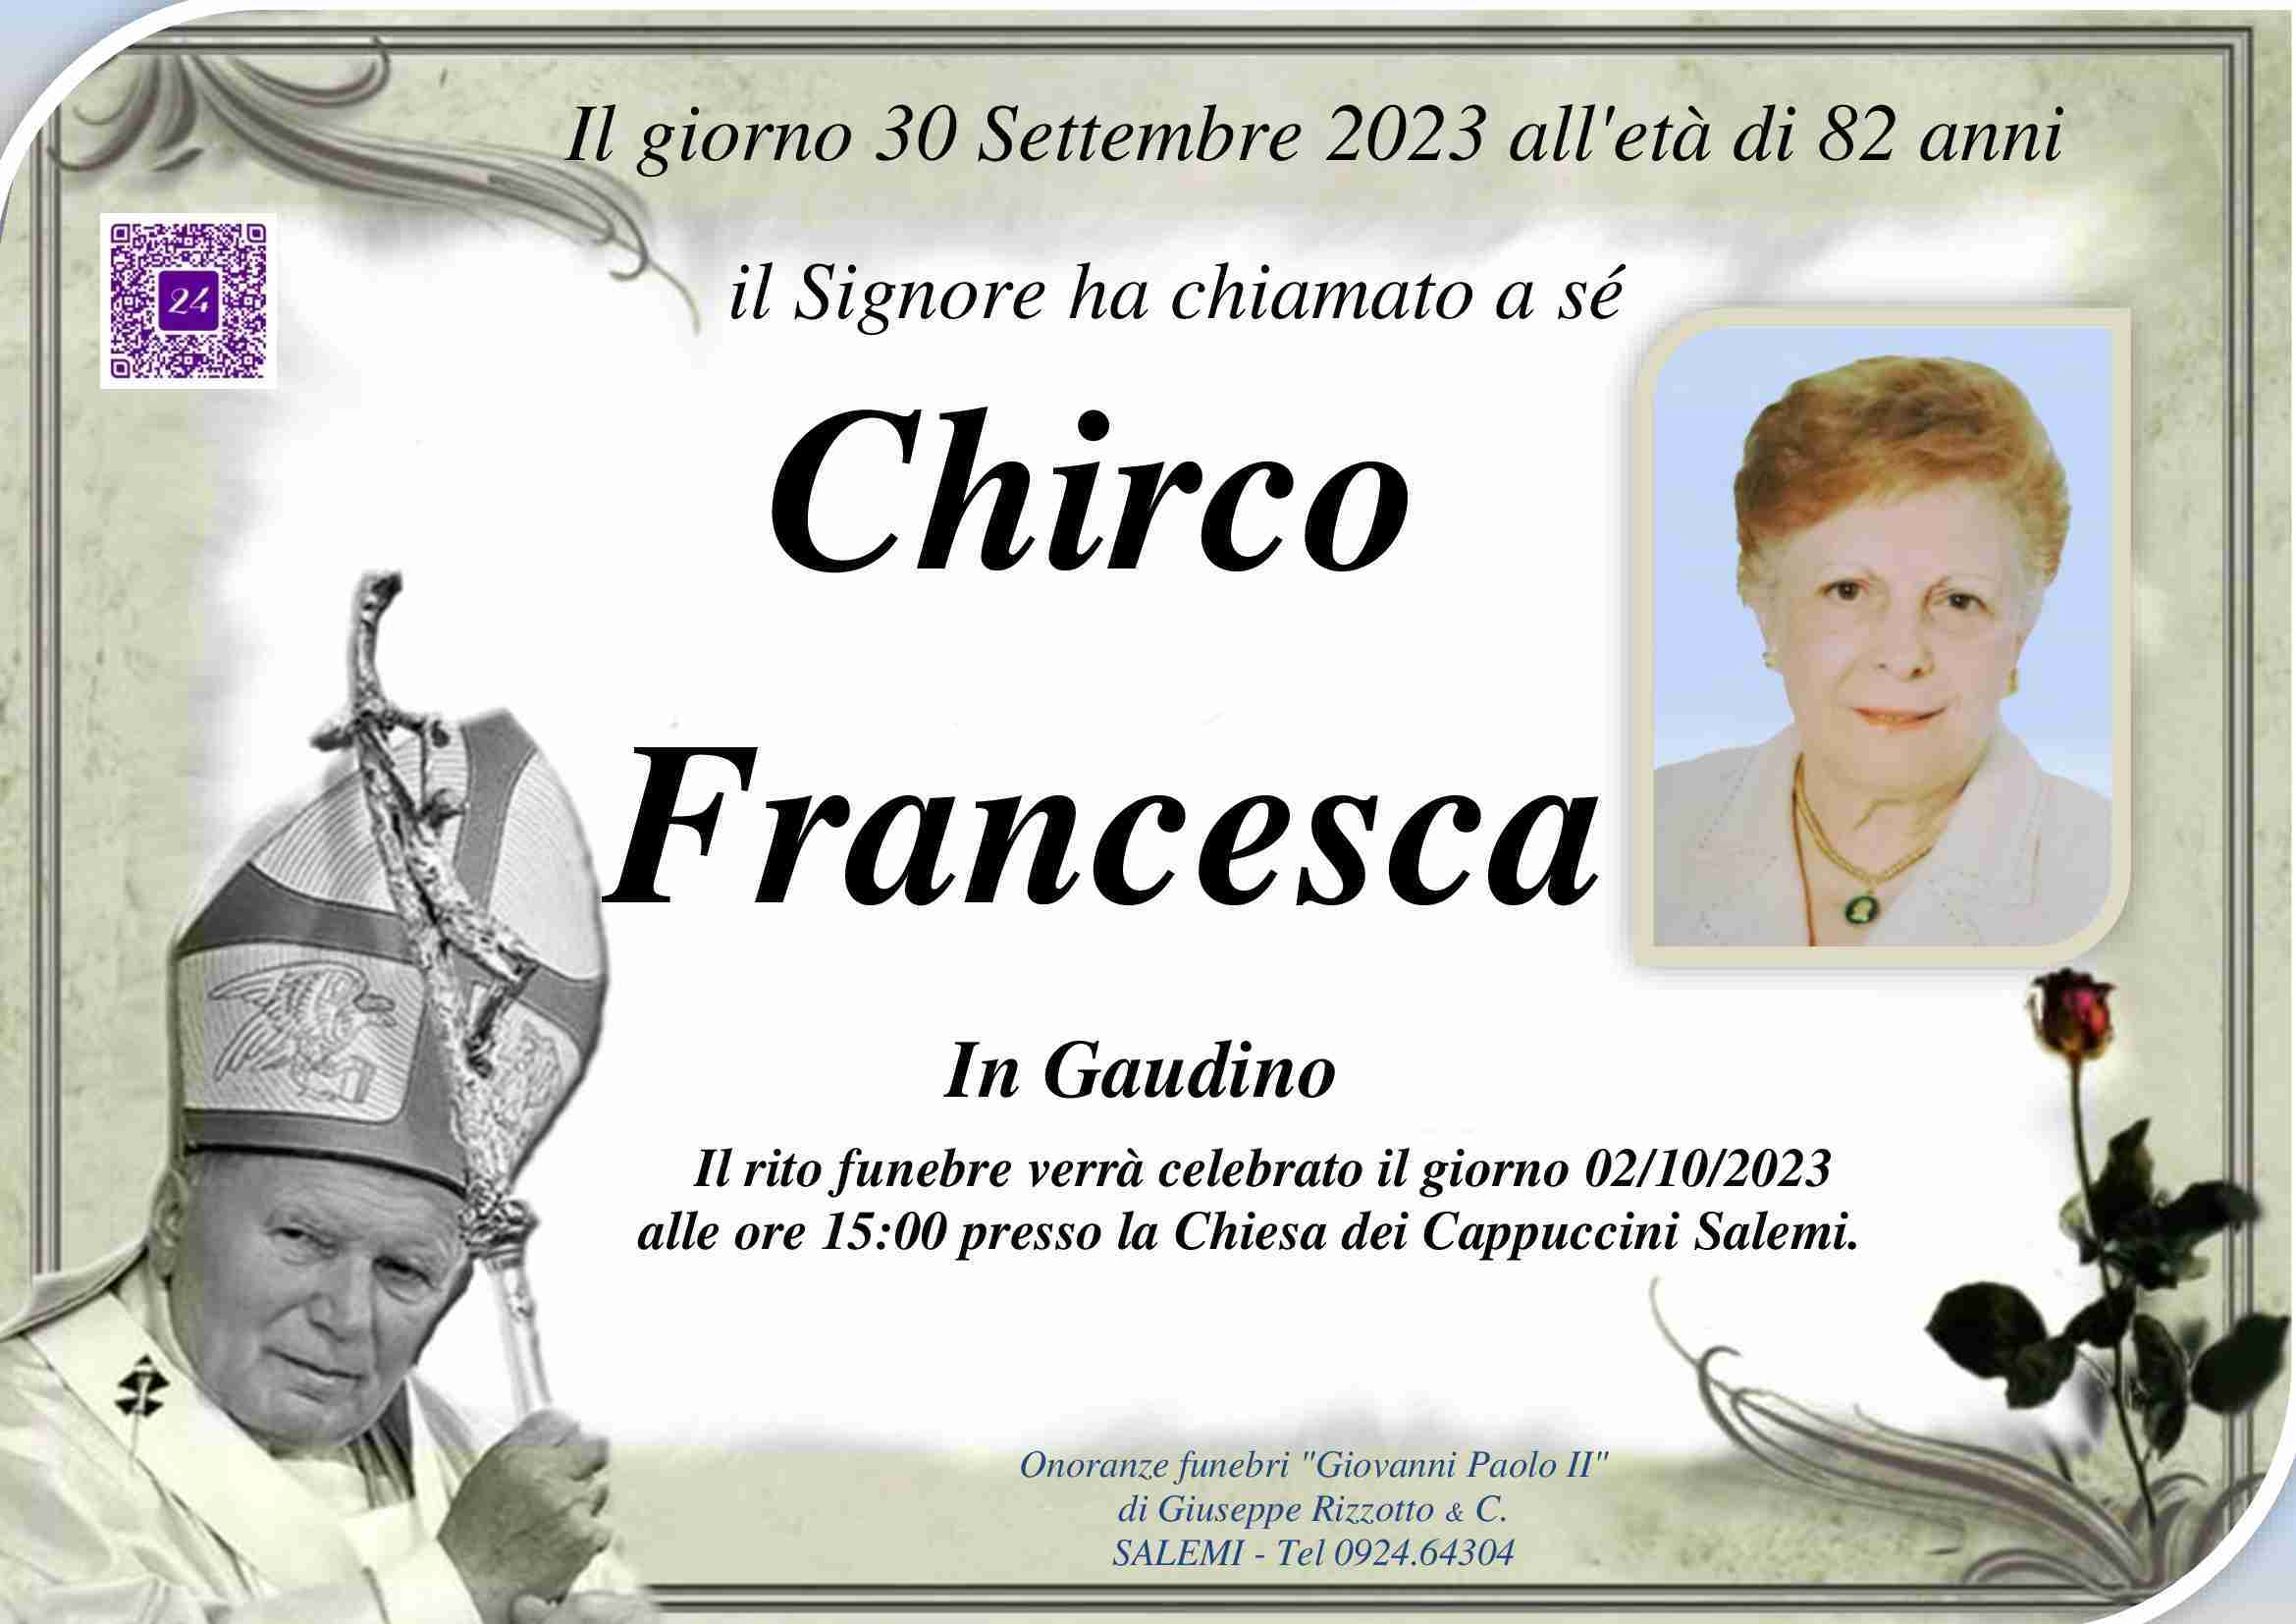 Francesca Chirco